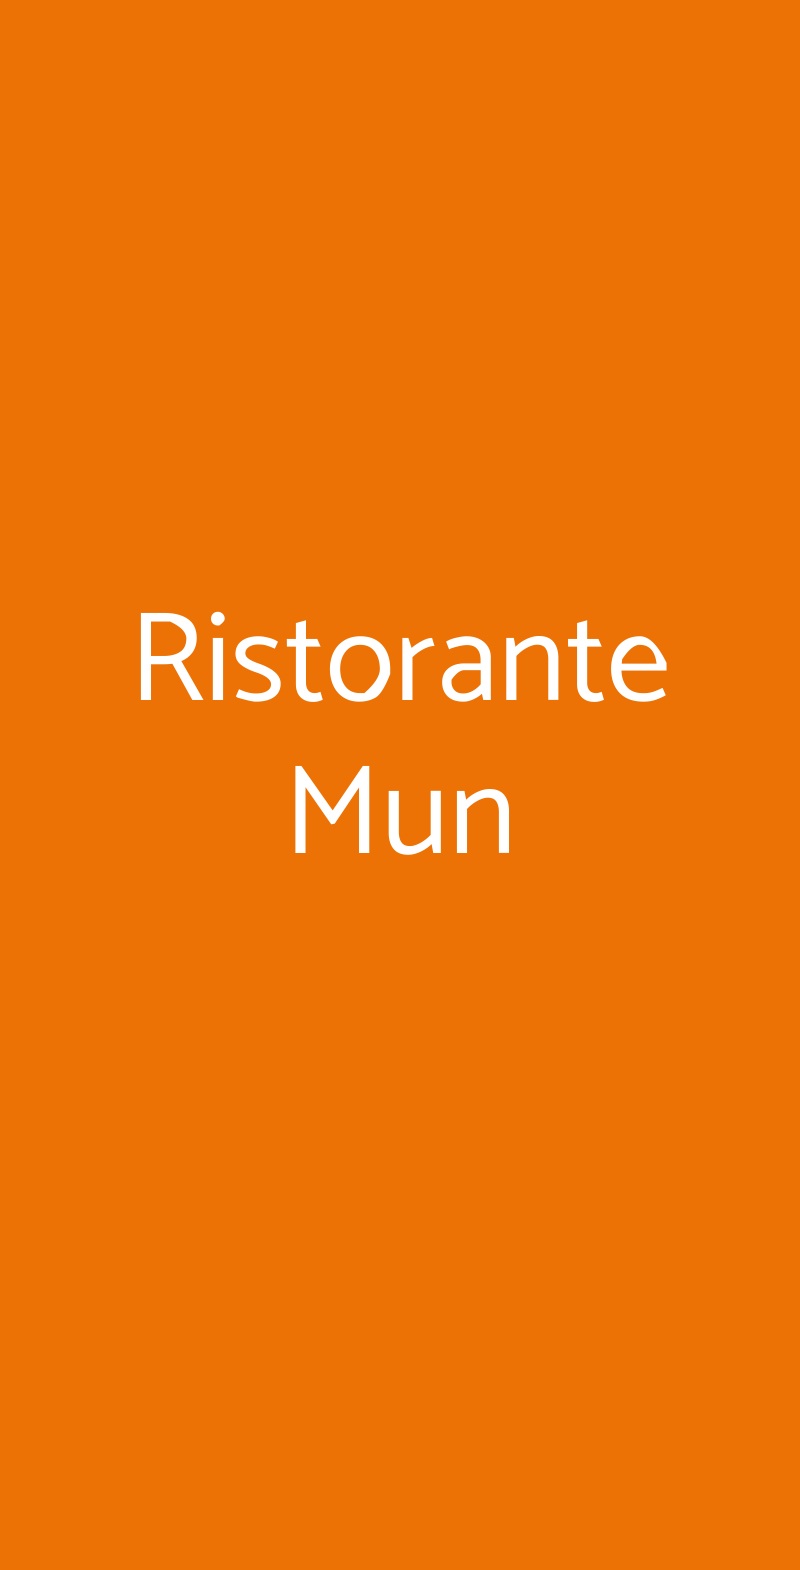 Ristorante Mun Milano menù 1 pagina